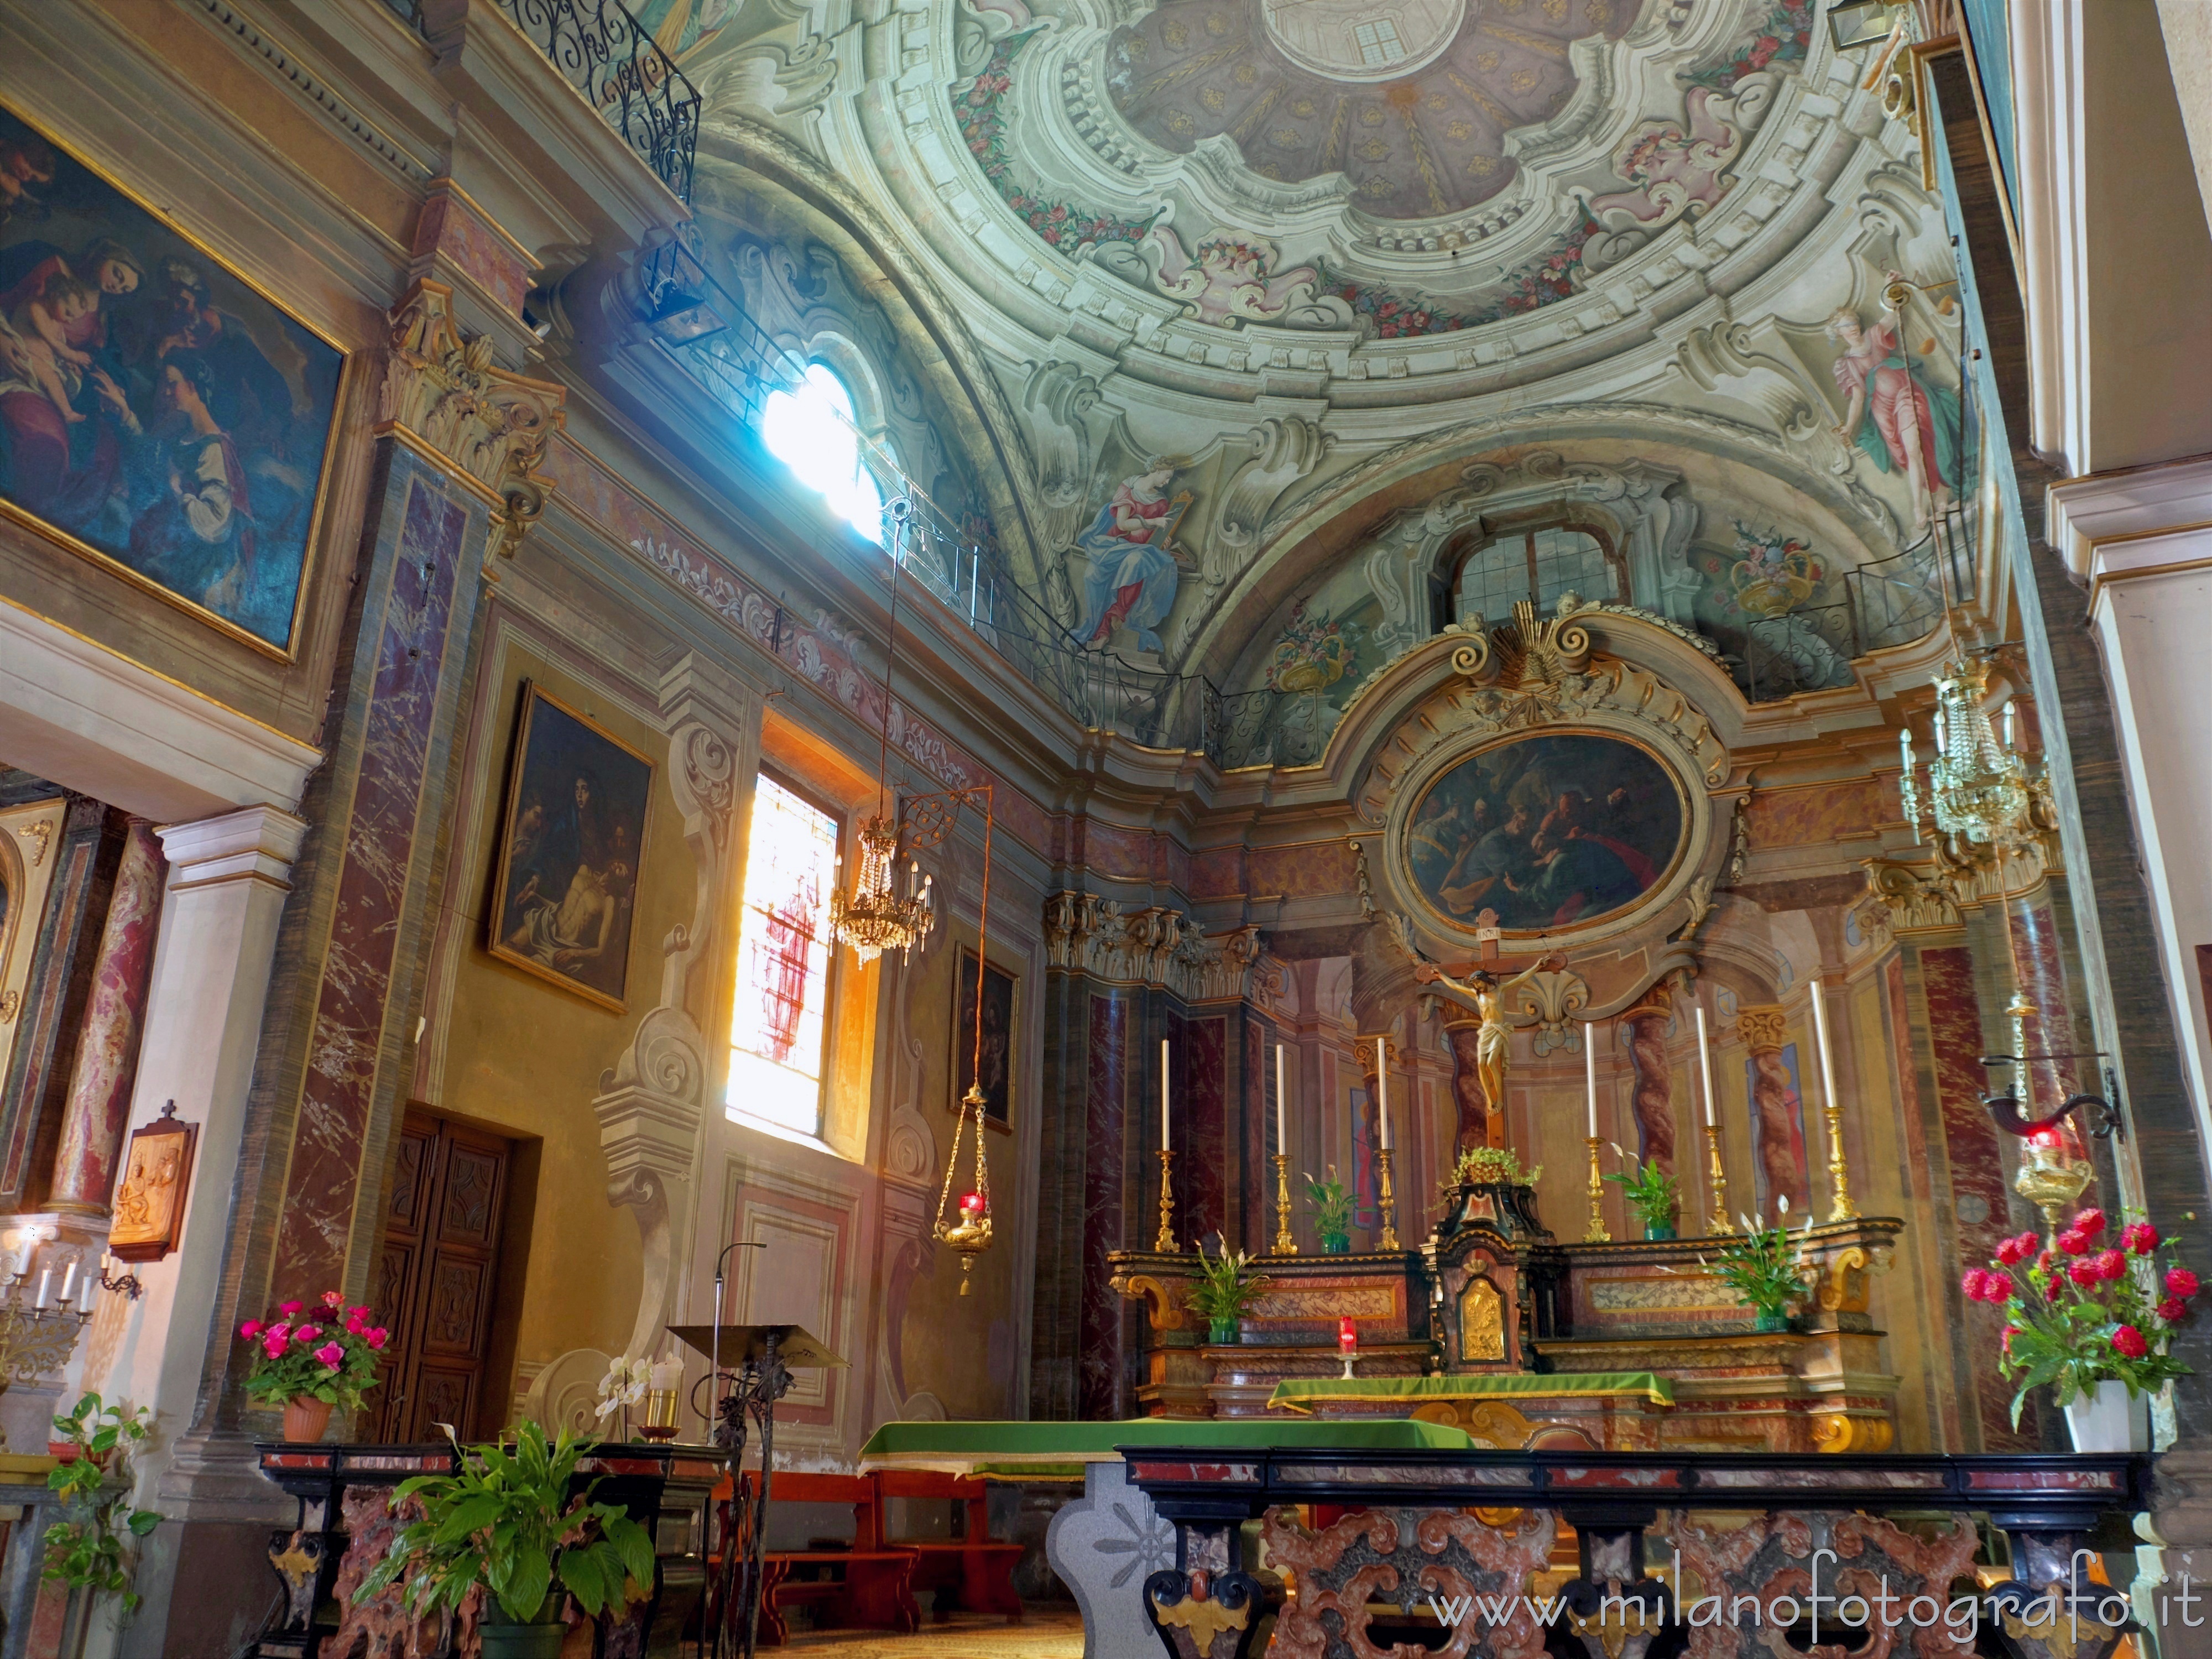 Candelo (Biella, Italy): Presbytery of the Church of San Pietro - Candelo (Biella, Italy)